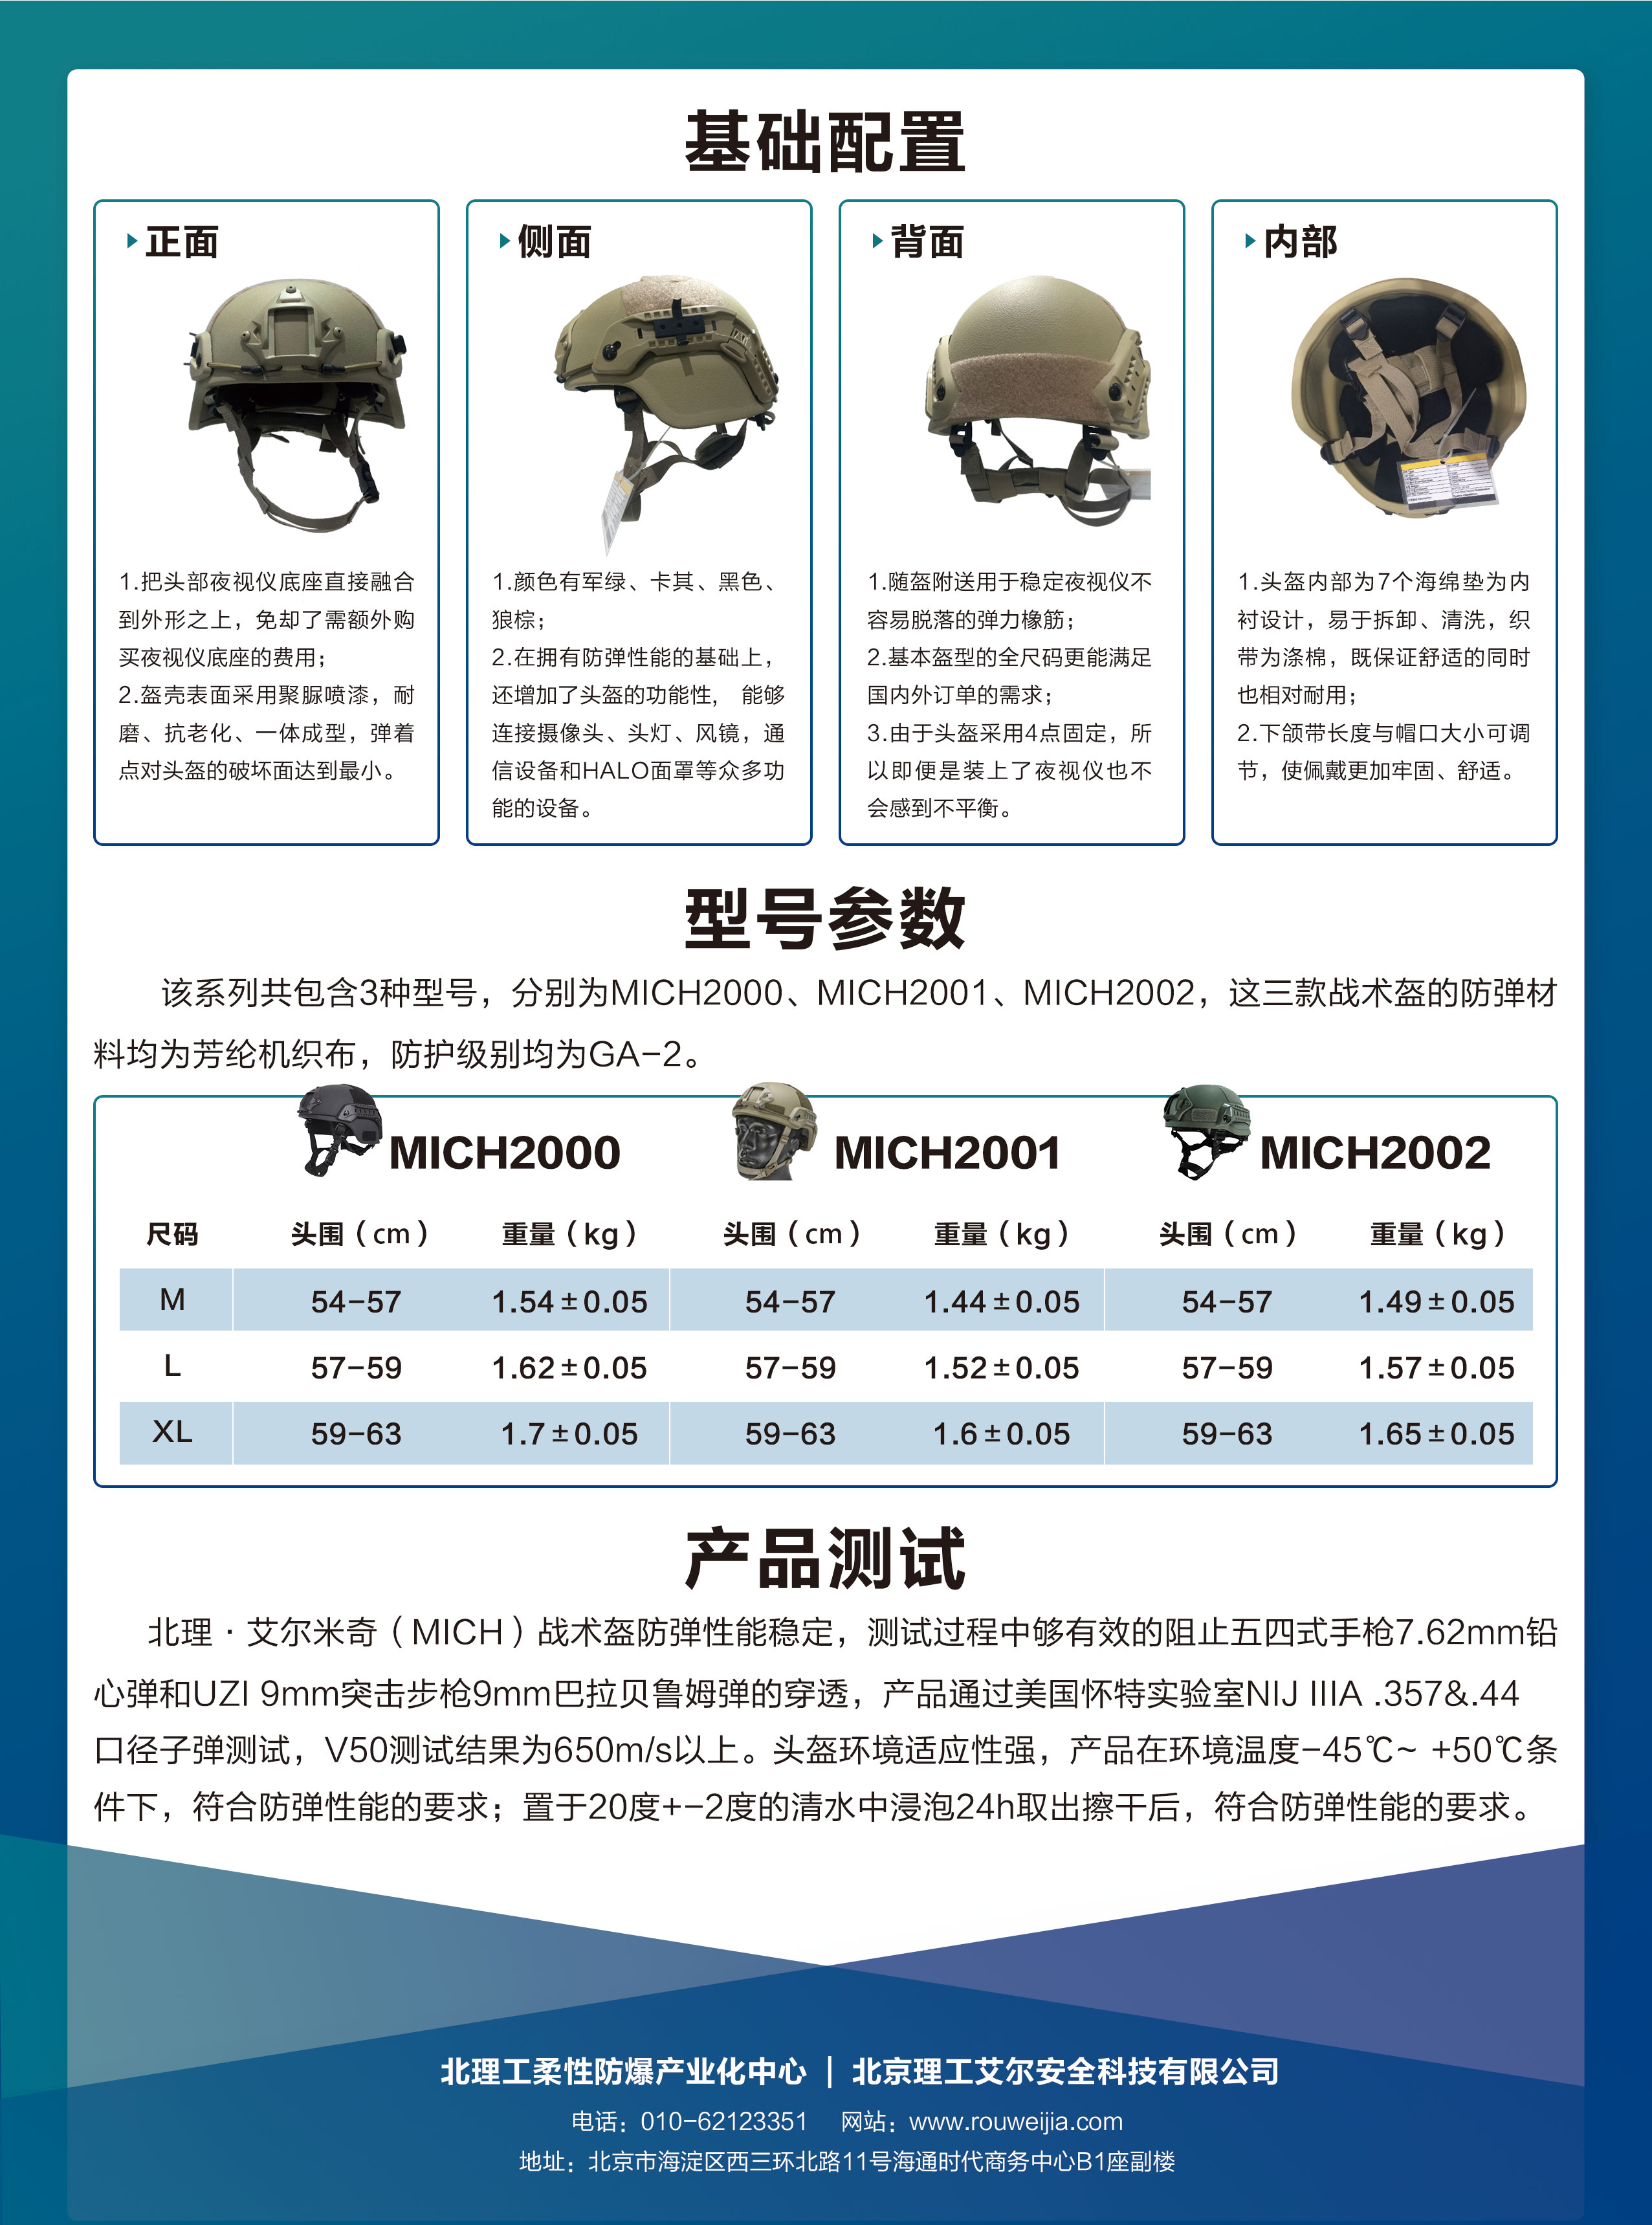 米奇战术盔2.jpg